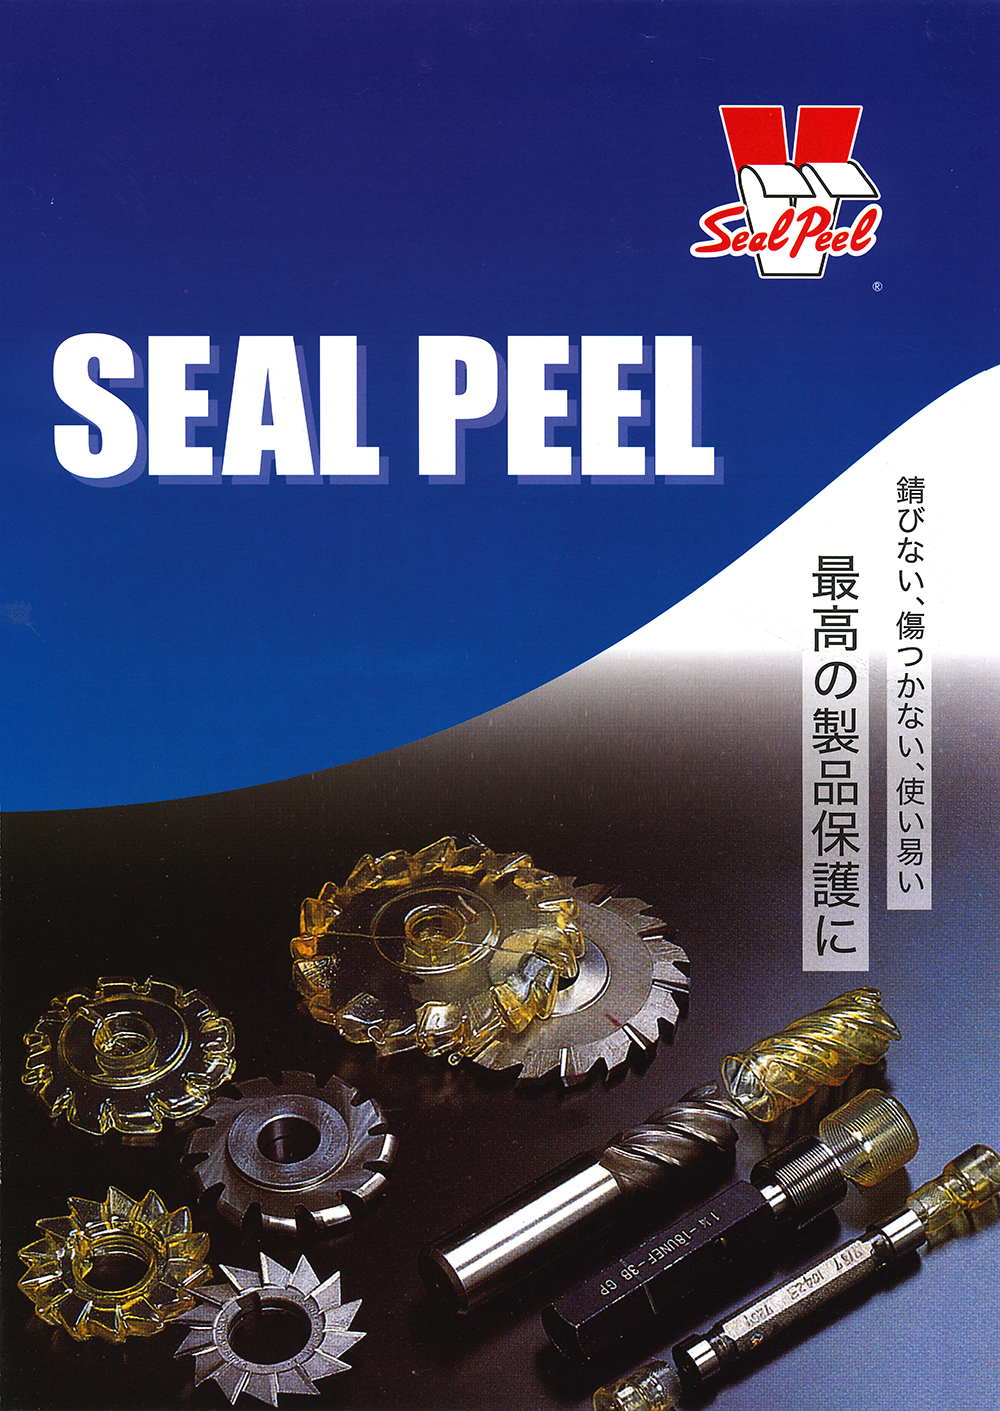 関東化学工業 皮膜保護材 シールピール SEAL PEEL 丸甲金物株式会社